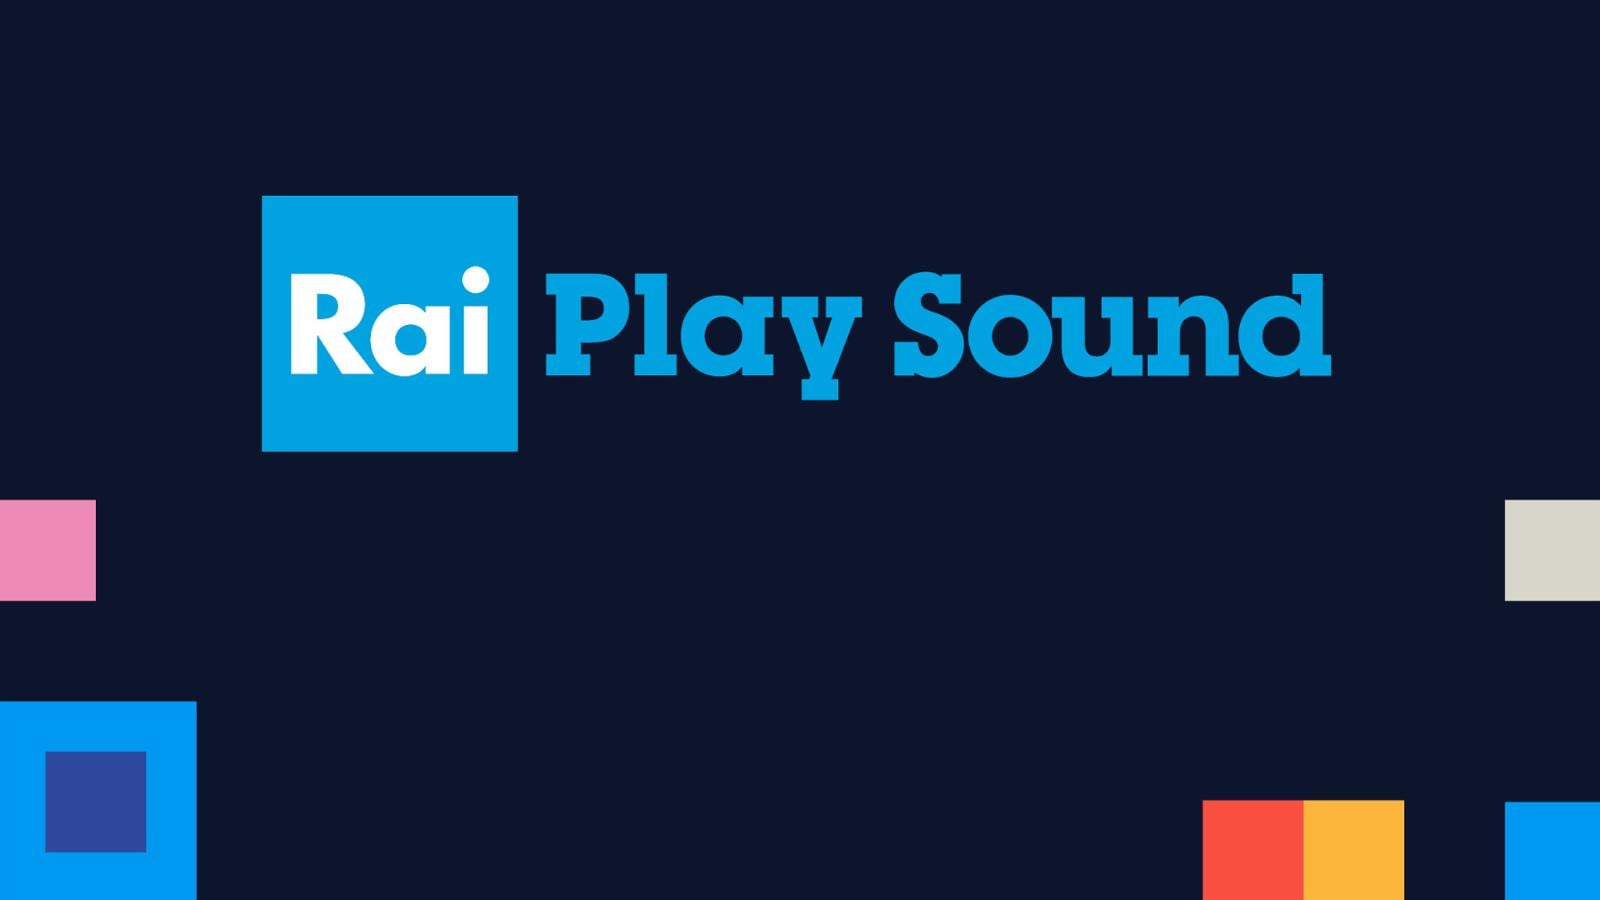 Rai Play Sound è la nuova piattaforma Rai dedicata all'intrattenimento audio